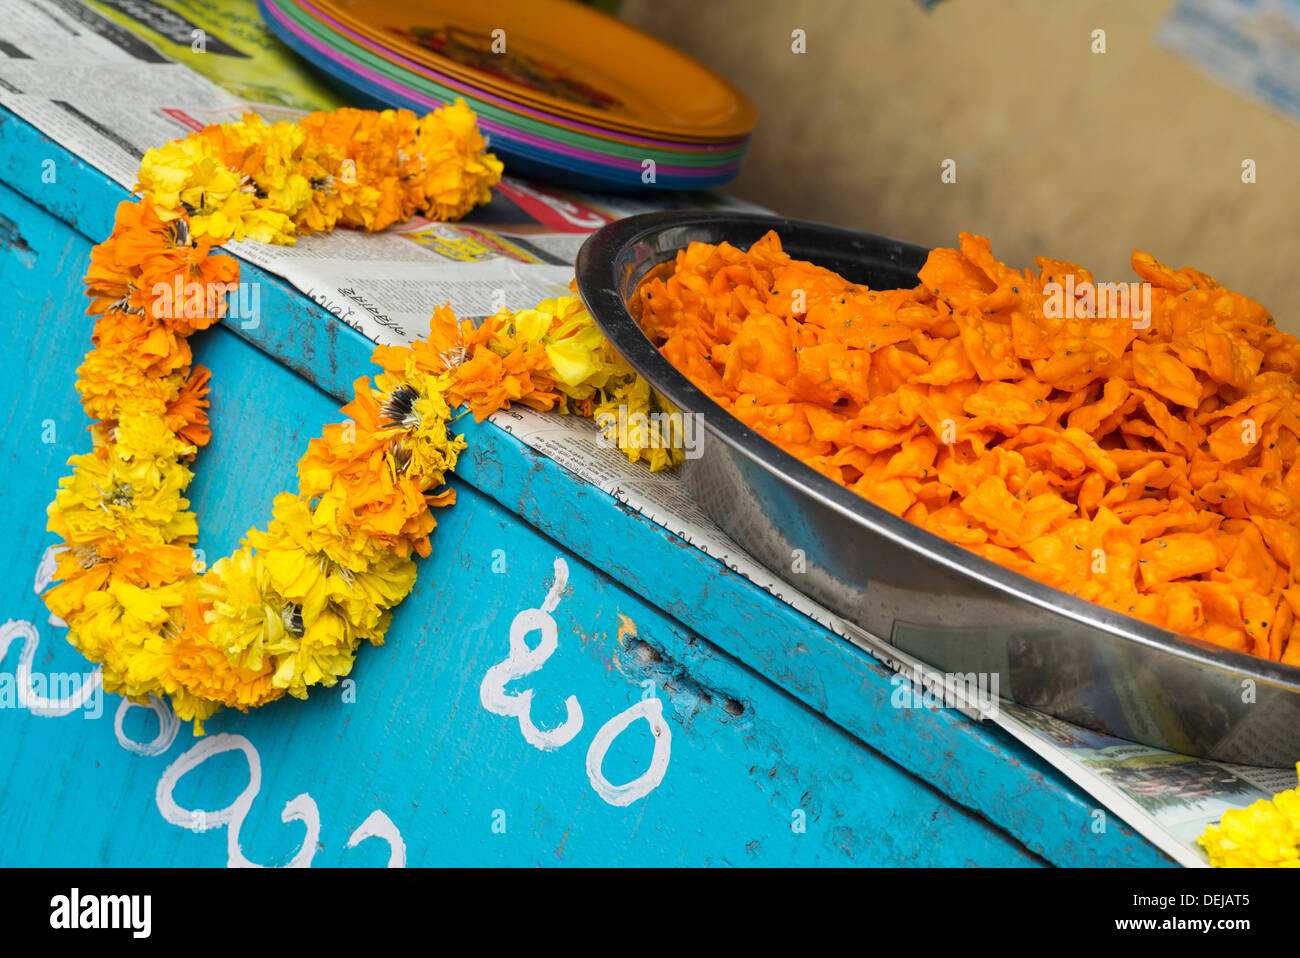 L'alimentation de rue indienne frits et flower garland. L'Inde Banque D'Images